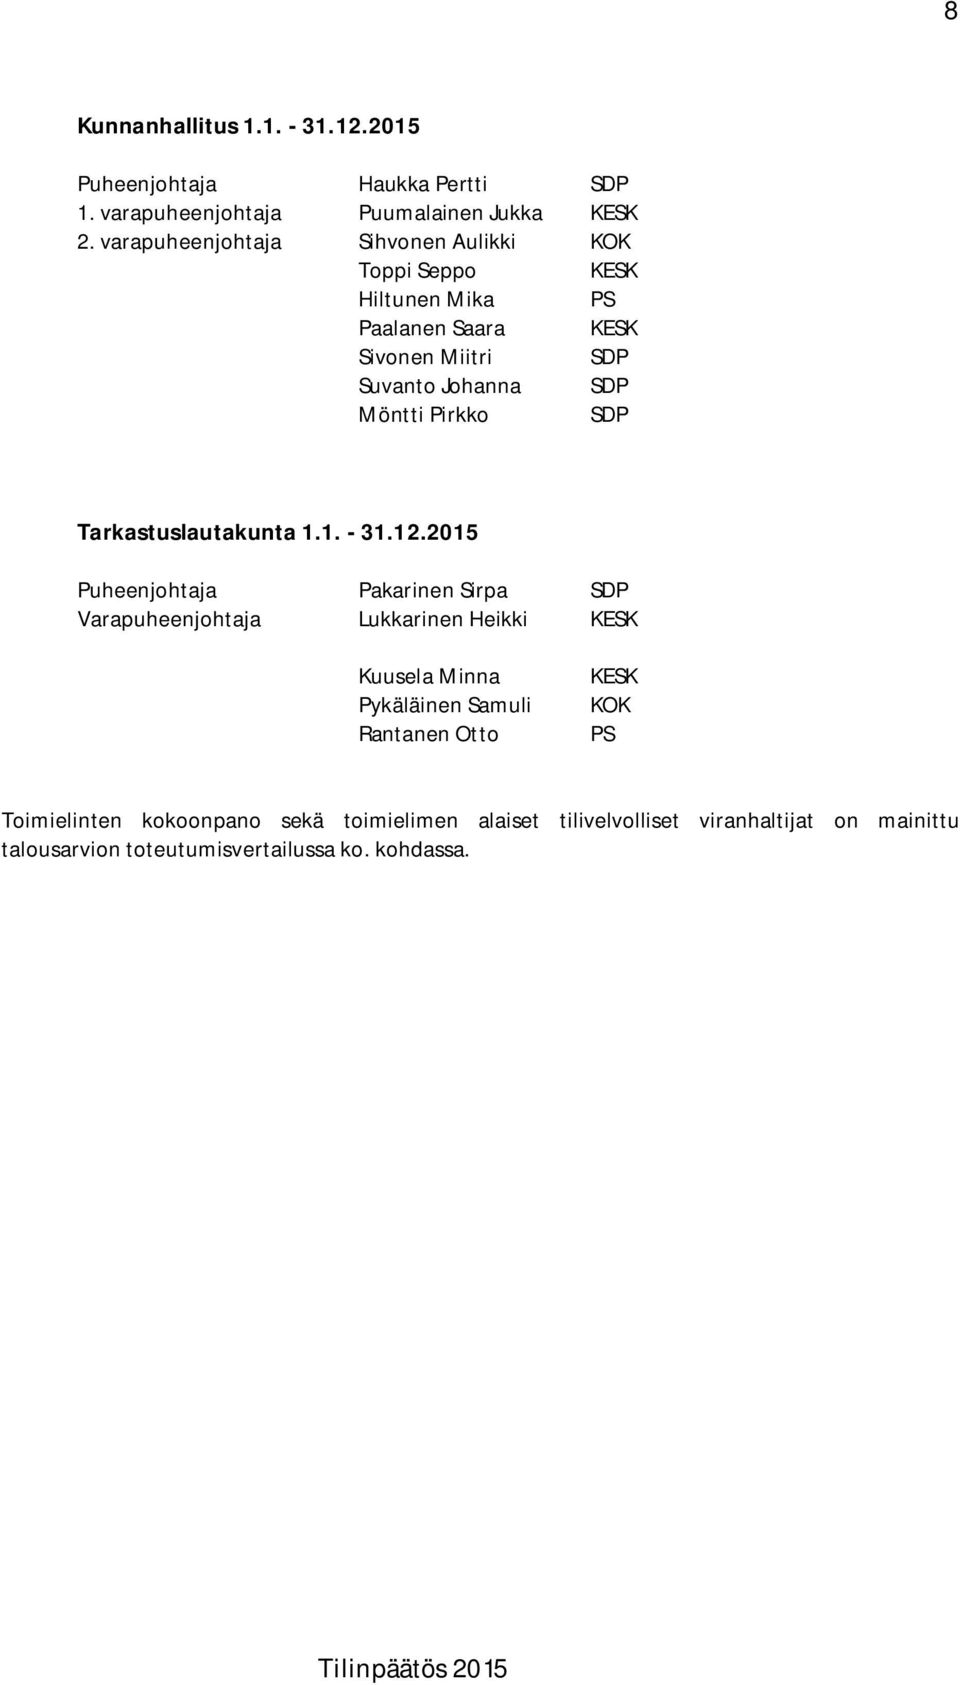 Pirkko SDP Tarkastuslautakunta 1.1. - 31.12.